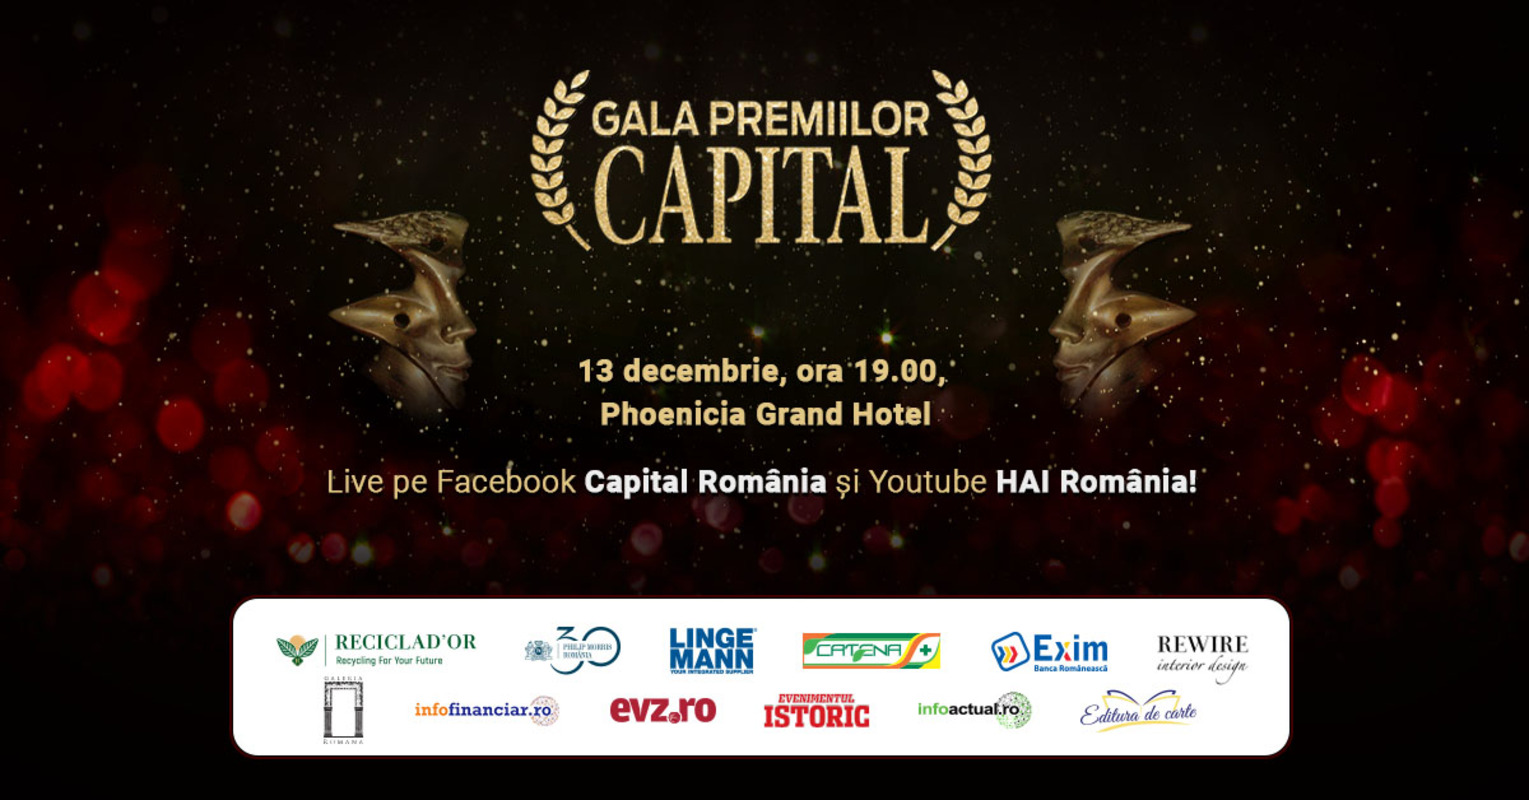 Gala Premiilor Capital 13 decembrie